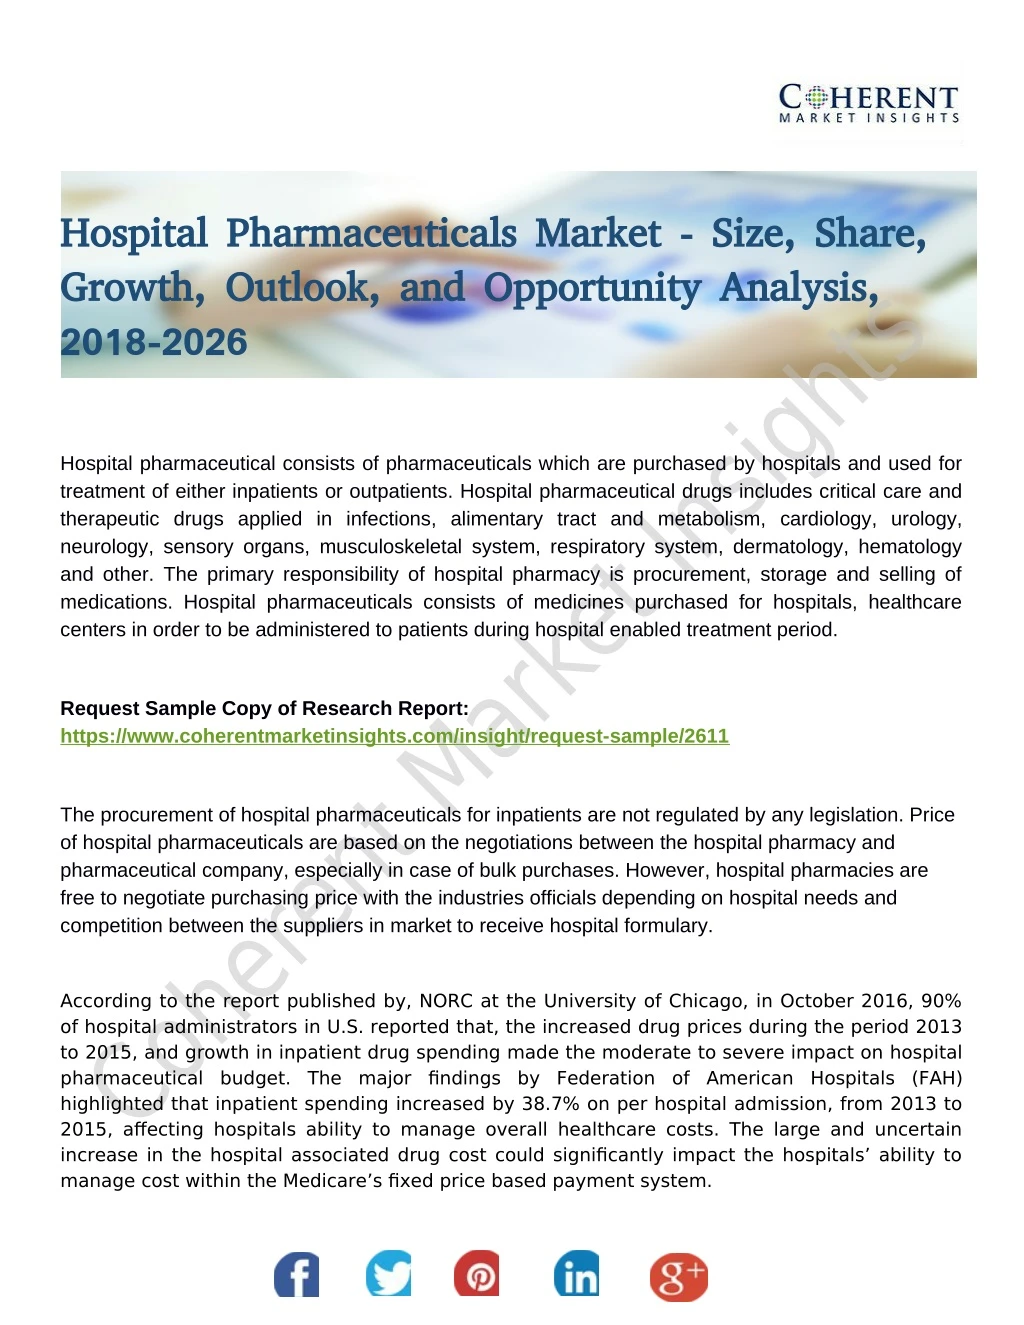 hospital pharmaceuticals market size share